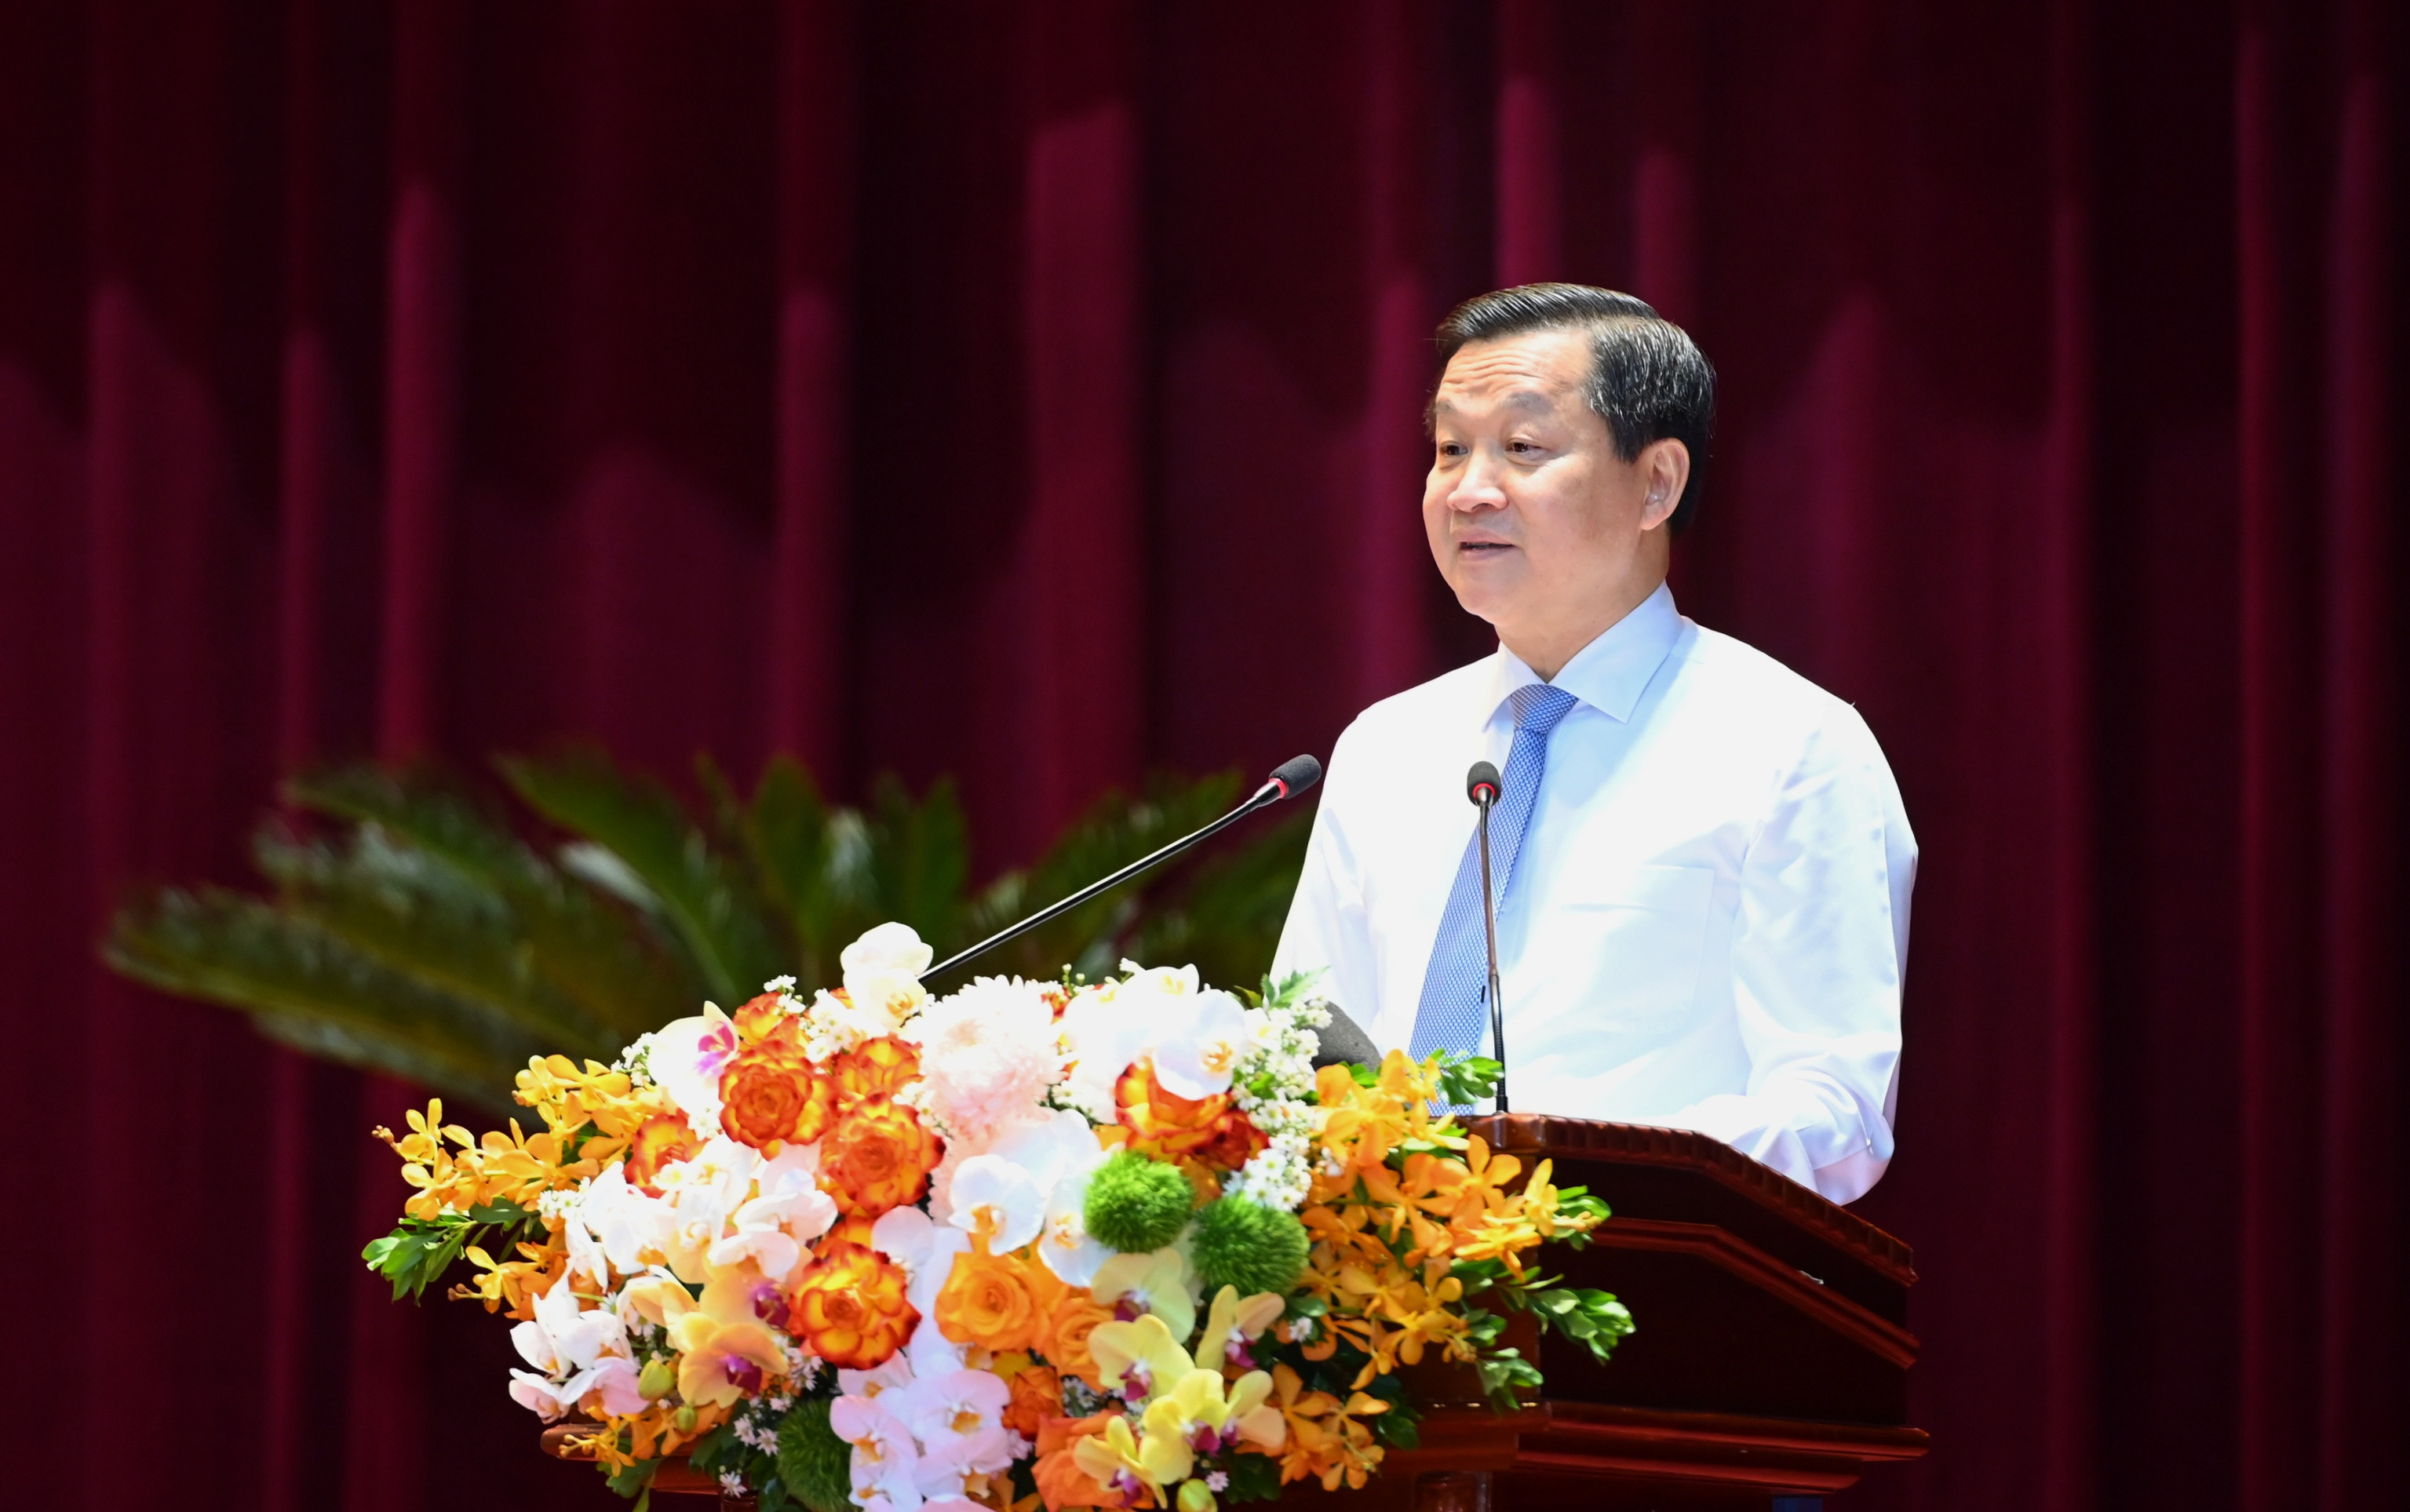 Đồng chí Lê Minh Khái, Bí thư Trung trong Đảng, Phó Thủ tướng Chính phủ thay mặt Ban cán sự đảng Chính phủ Báo cáo về Chương trình hành động thực hiện Nghị quyết số 39-NQ/TW của Bộ Chính trị về xây dựng và phát triển tỉnh Nghệ An đến năm 2030, tầm nhìn đến năm 2045